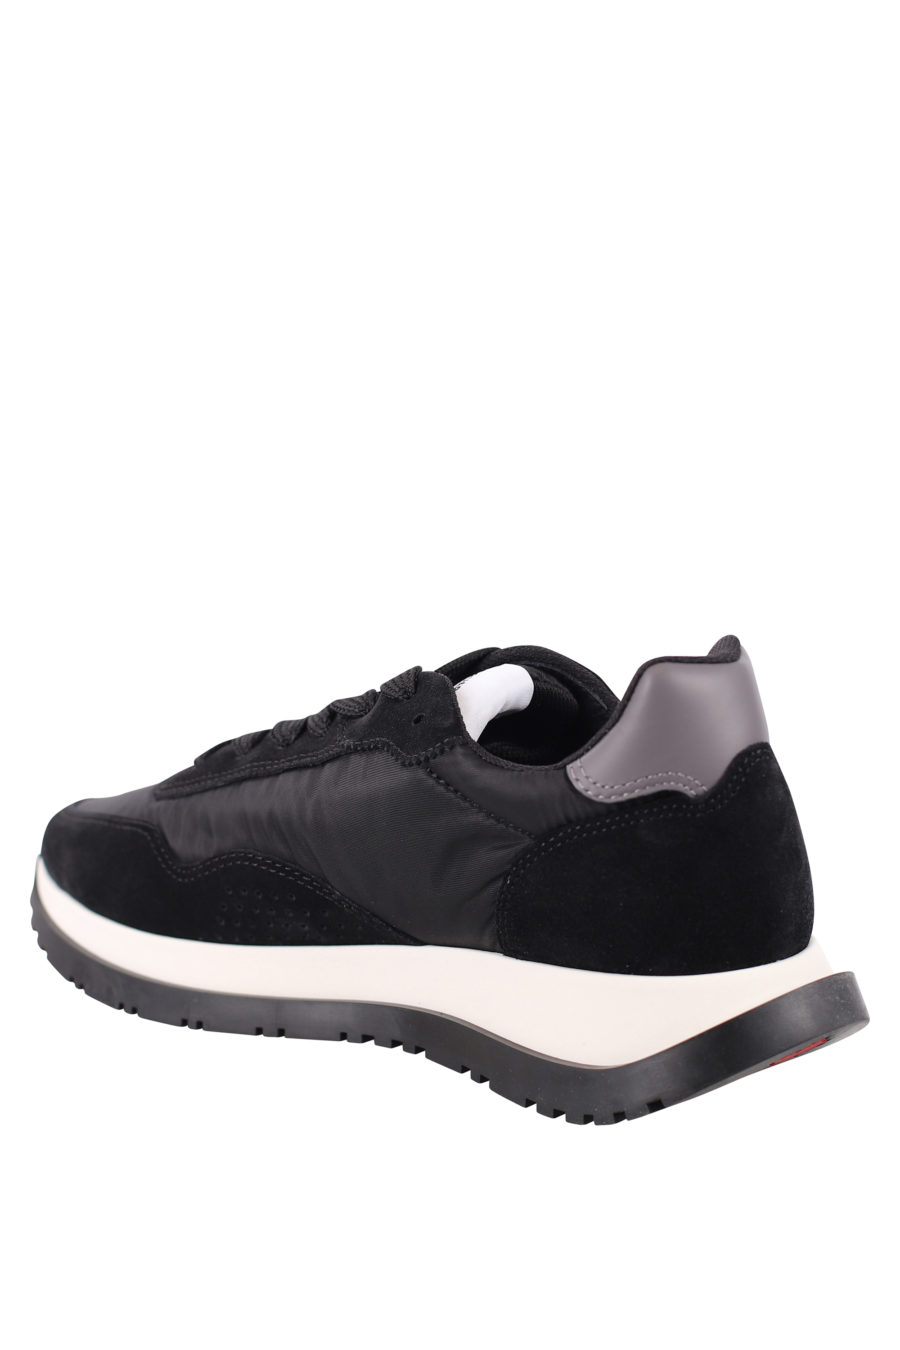 Zapatillas negras con logo diagonal blanco - IMG 0704